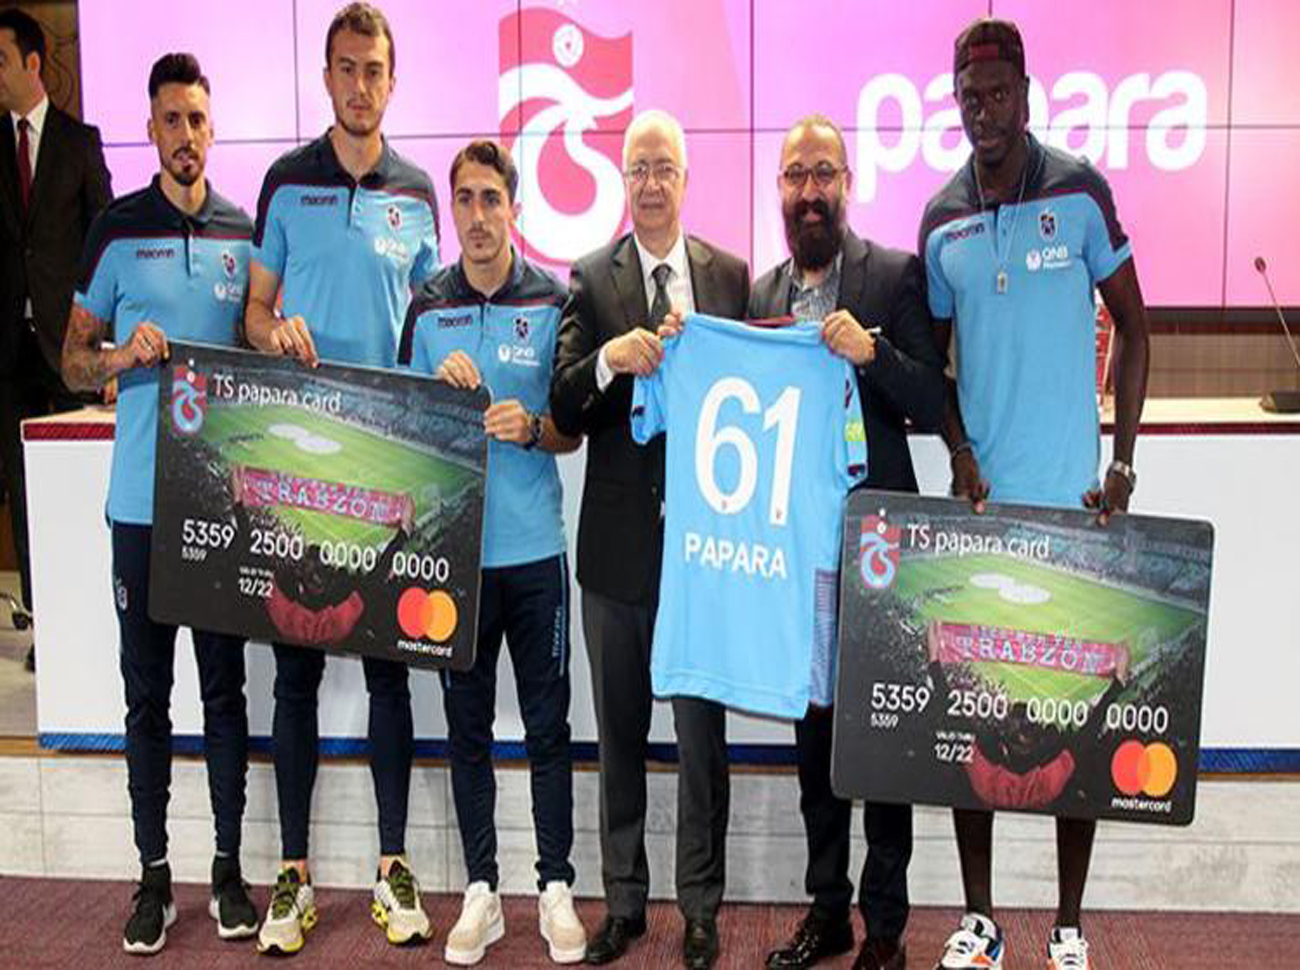 Trabzonspor Papara Card Sponsorluk